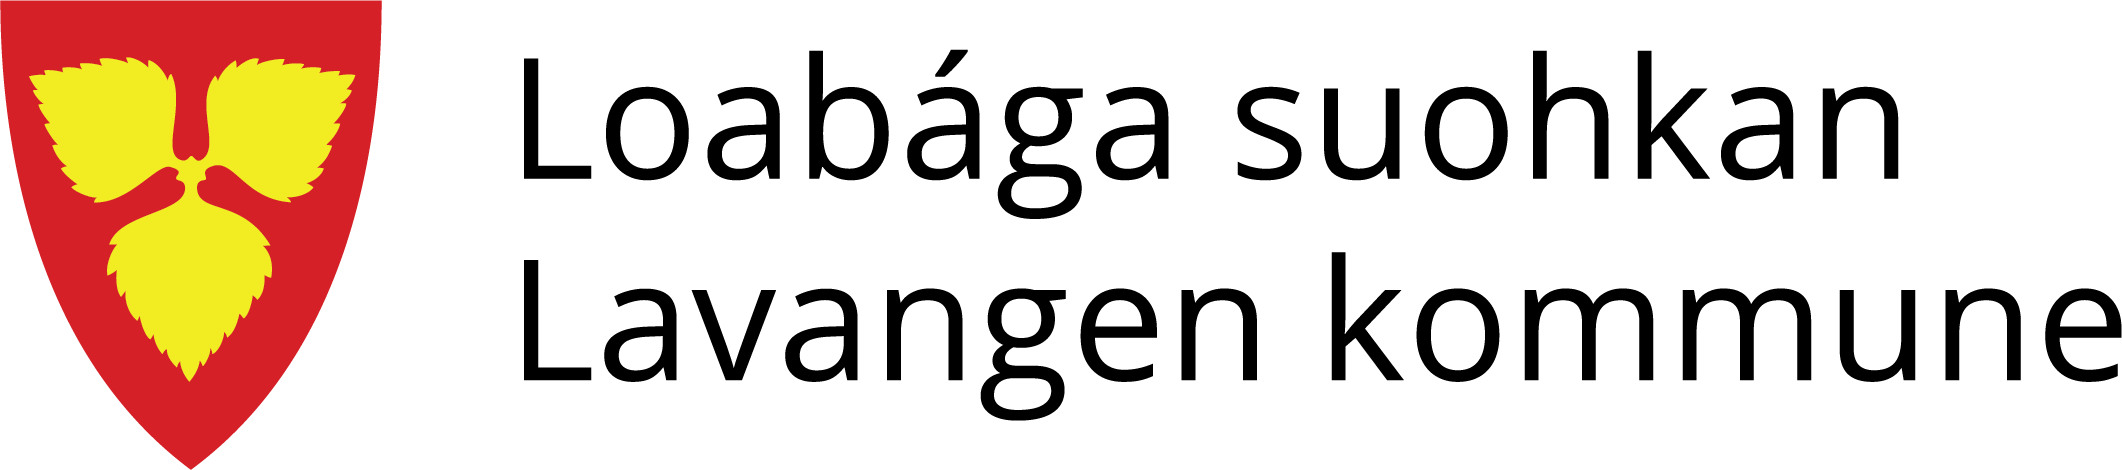 Lavangen_kommune_logo_primær_CMYK.png